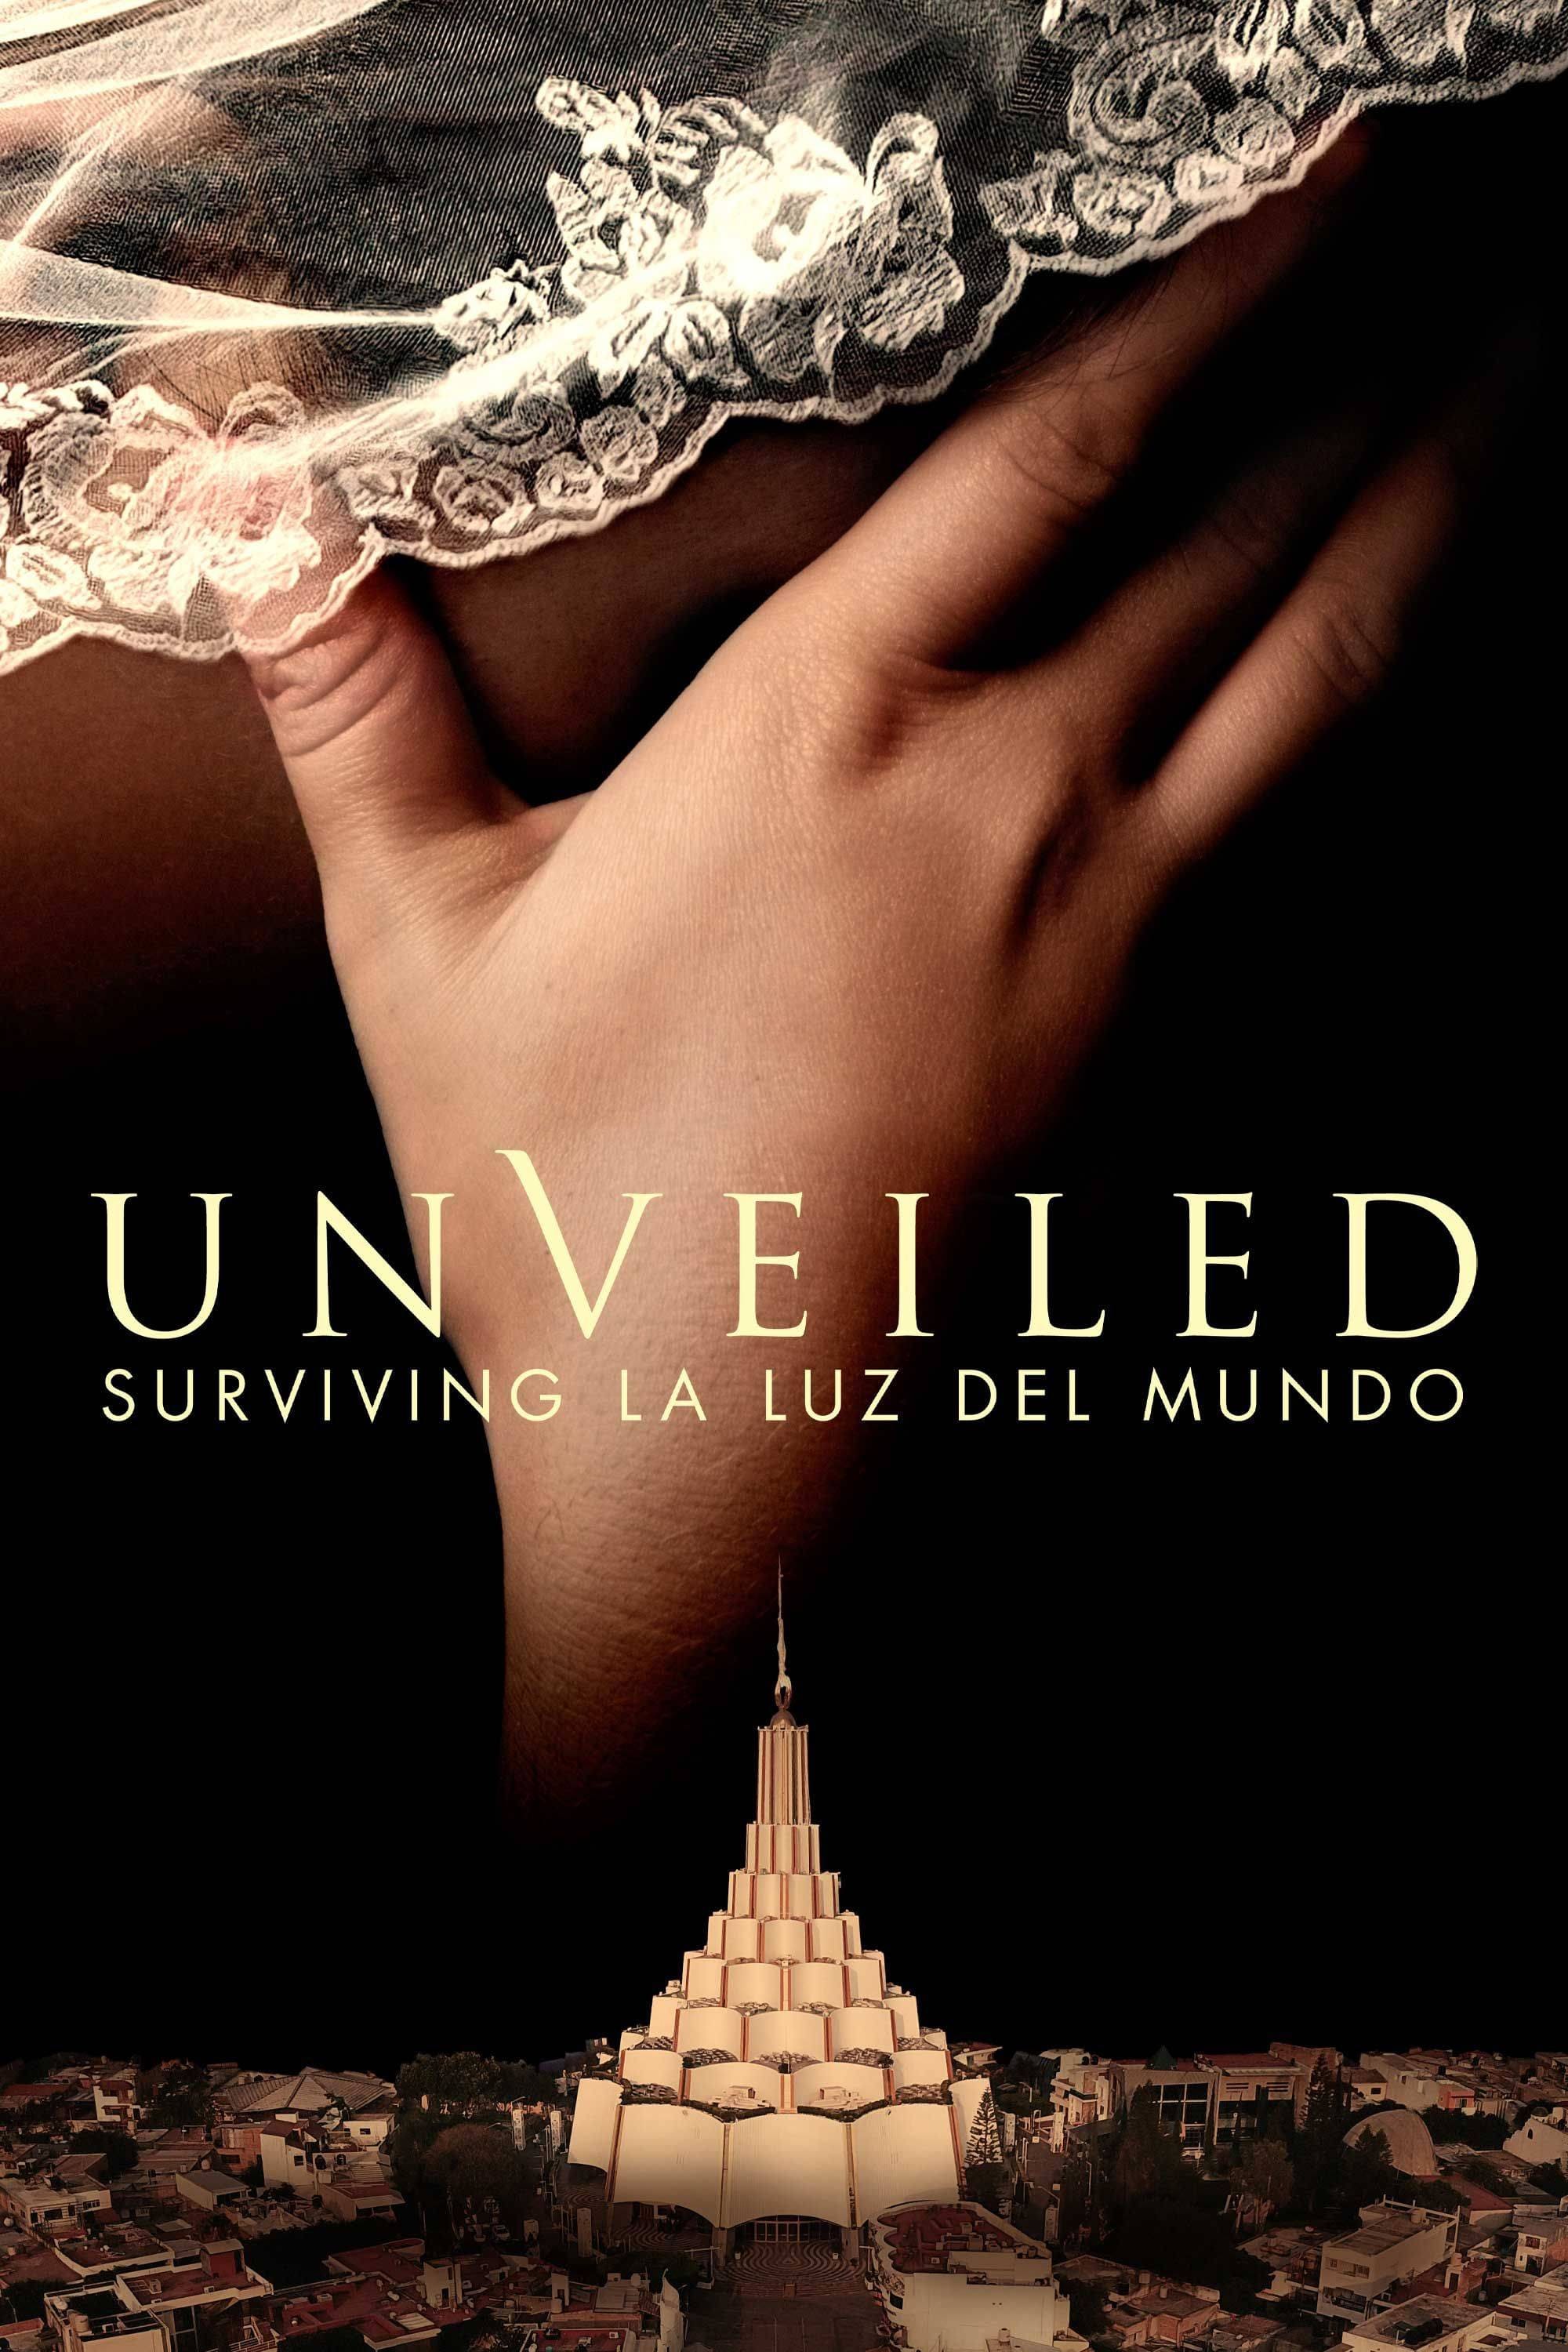 Unveiled: Surviving La Luz del Mundo TV Shows About Crime